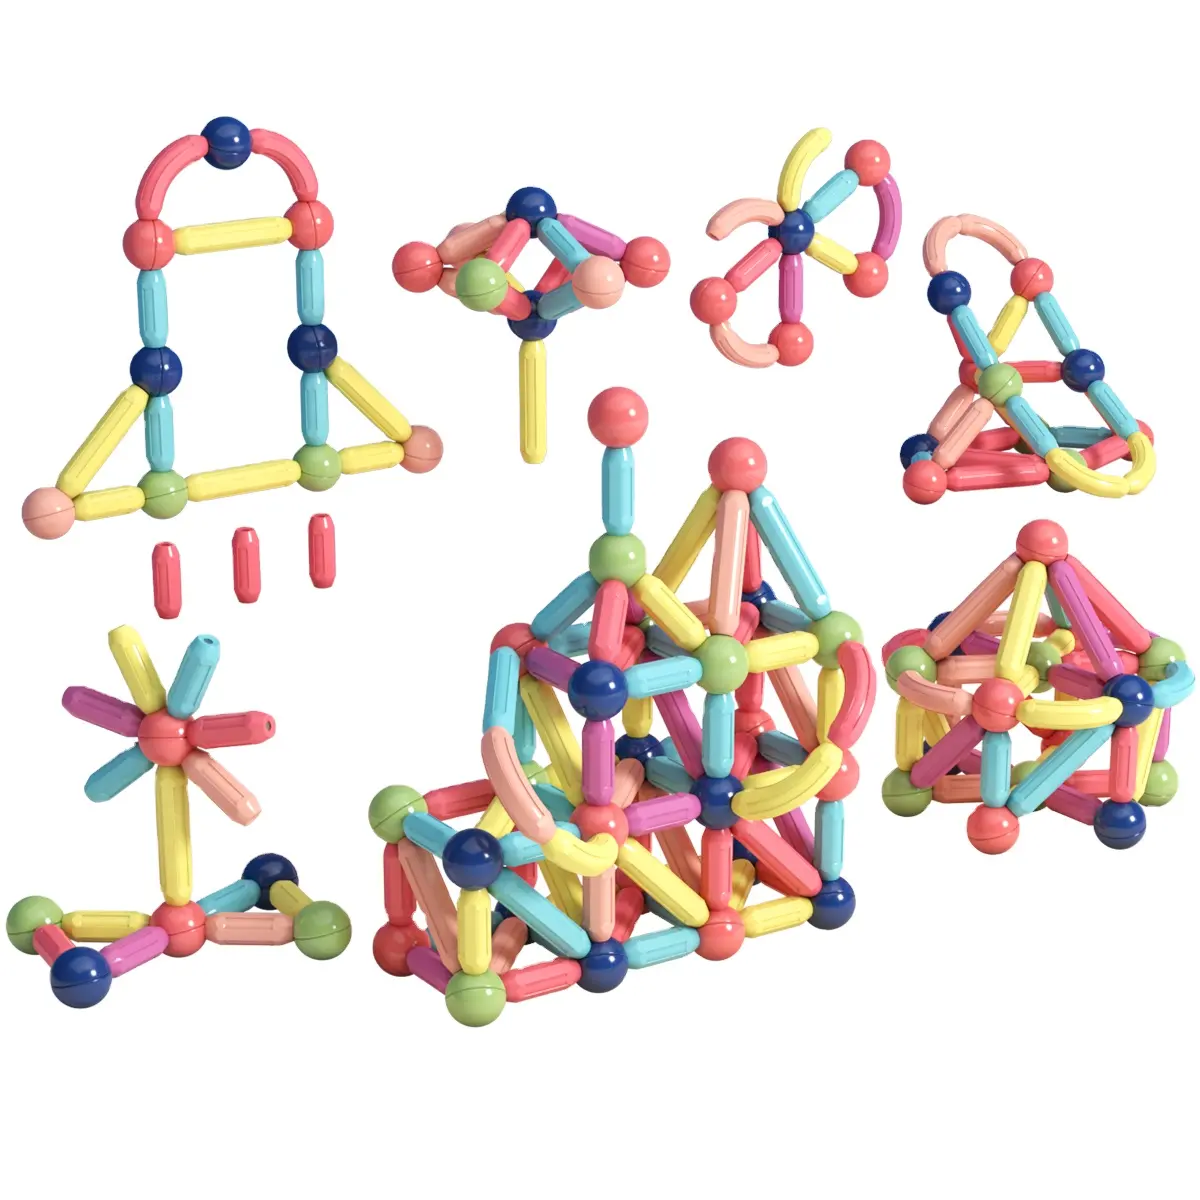 Mıknatıs sopa çubuklar manyetik 3D DIY yaratıcı eğitim bulmaca ilginç komik oyuncak çocuklar yapı taşları